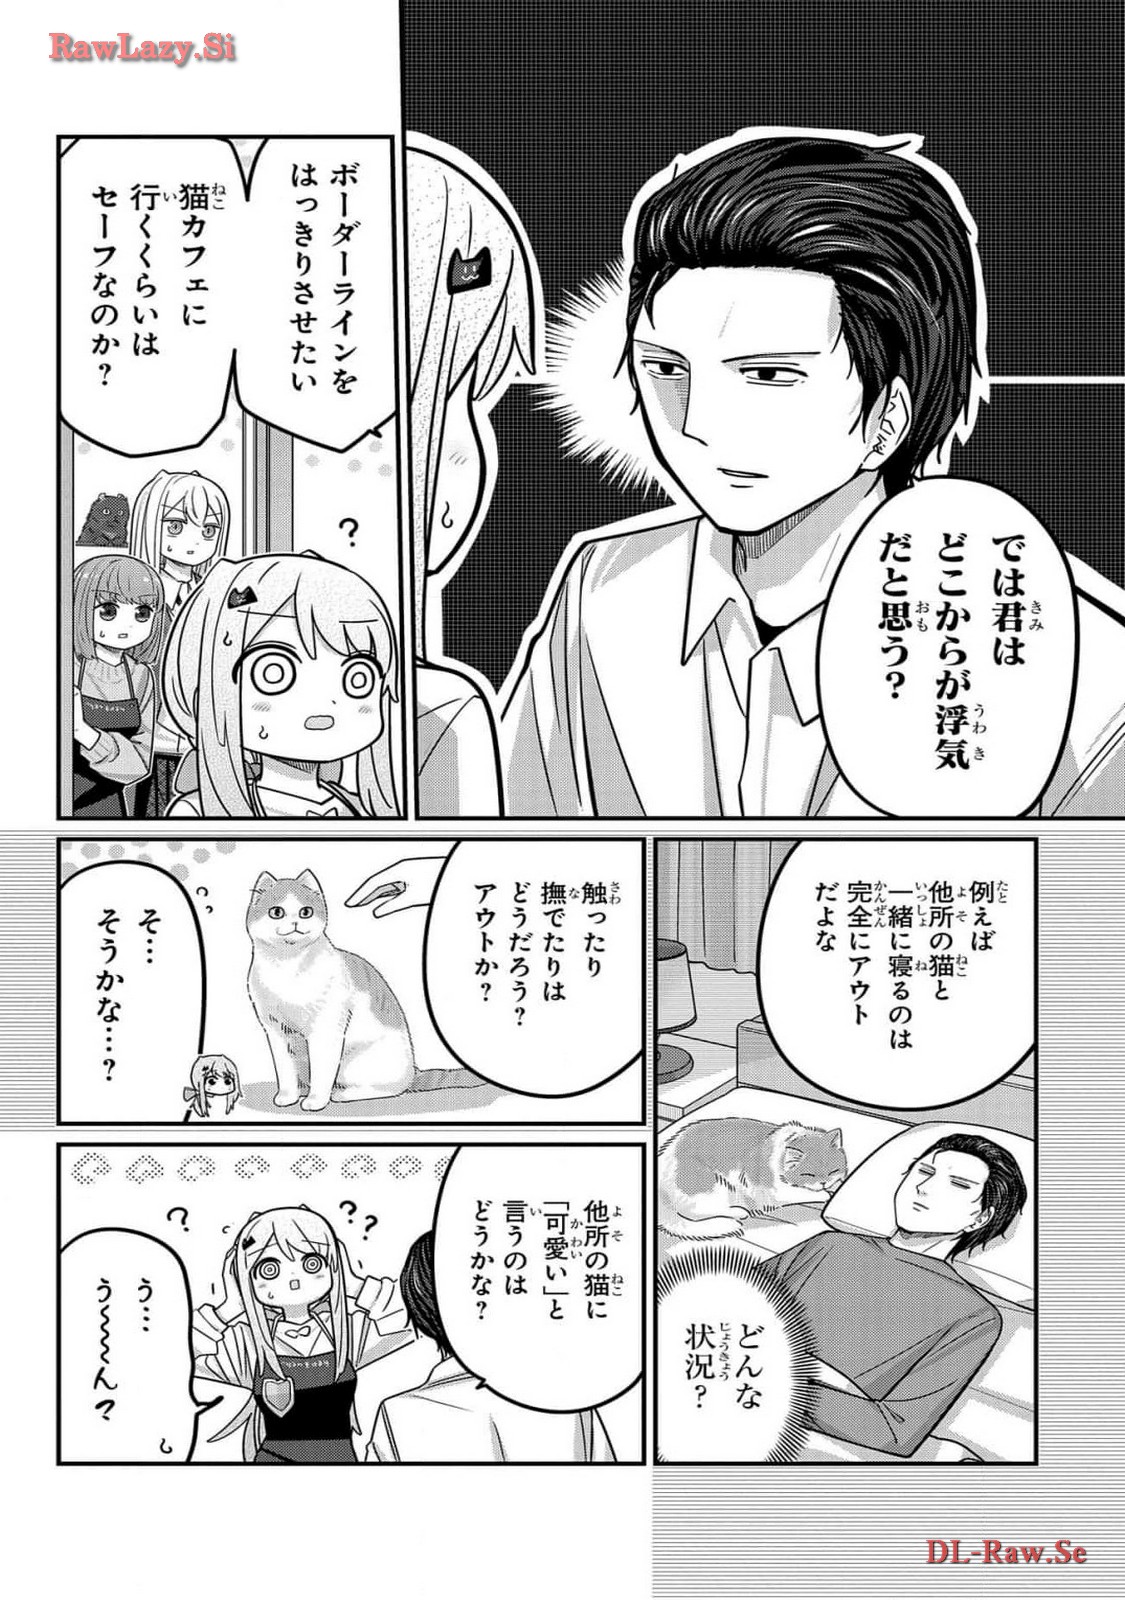 Kawaisugi Crisis - Chapter 99 - Page 10